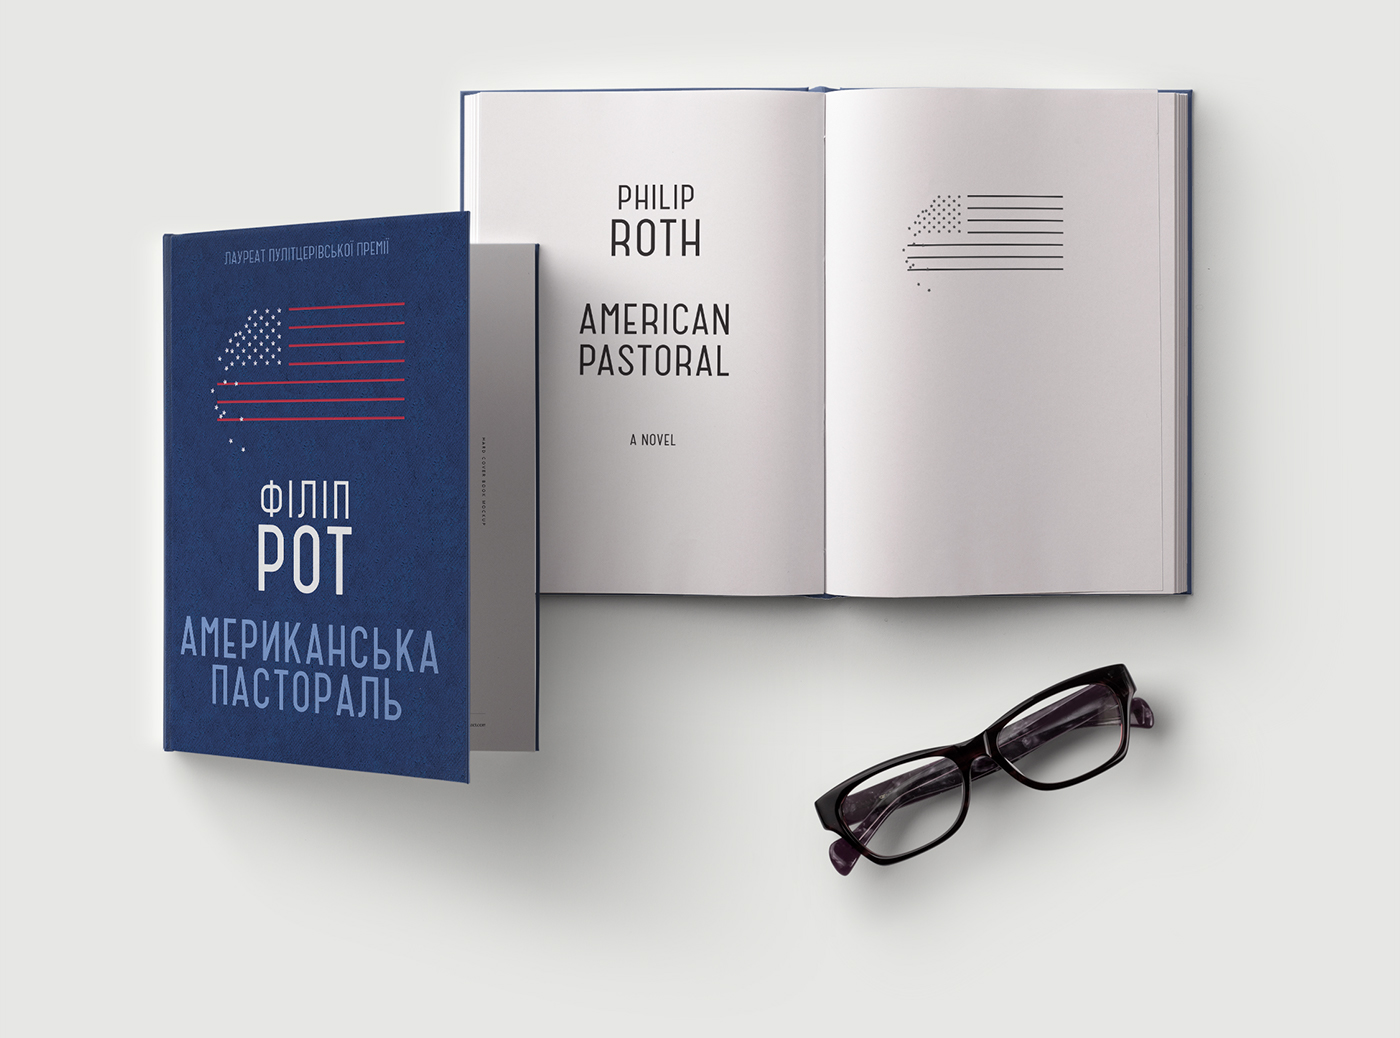 american pastoral book cover design bookcover Pulitzer Philip Roth edition creative